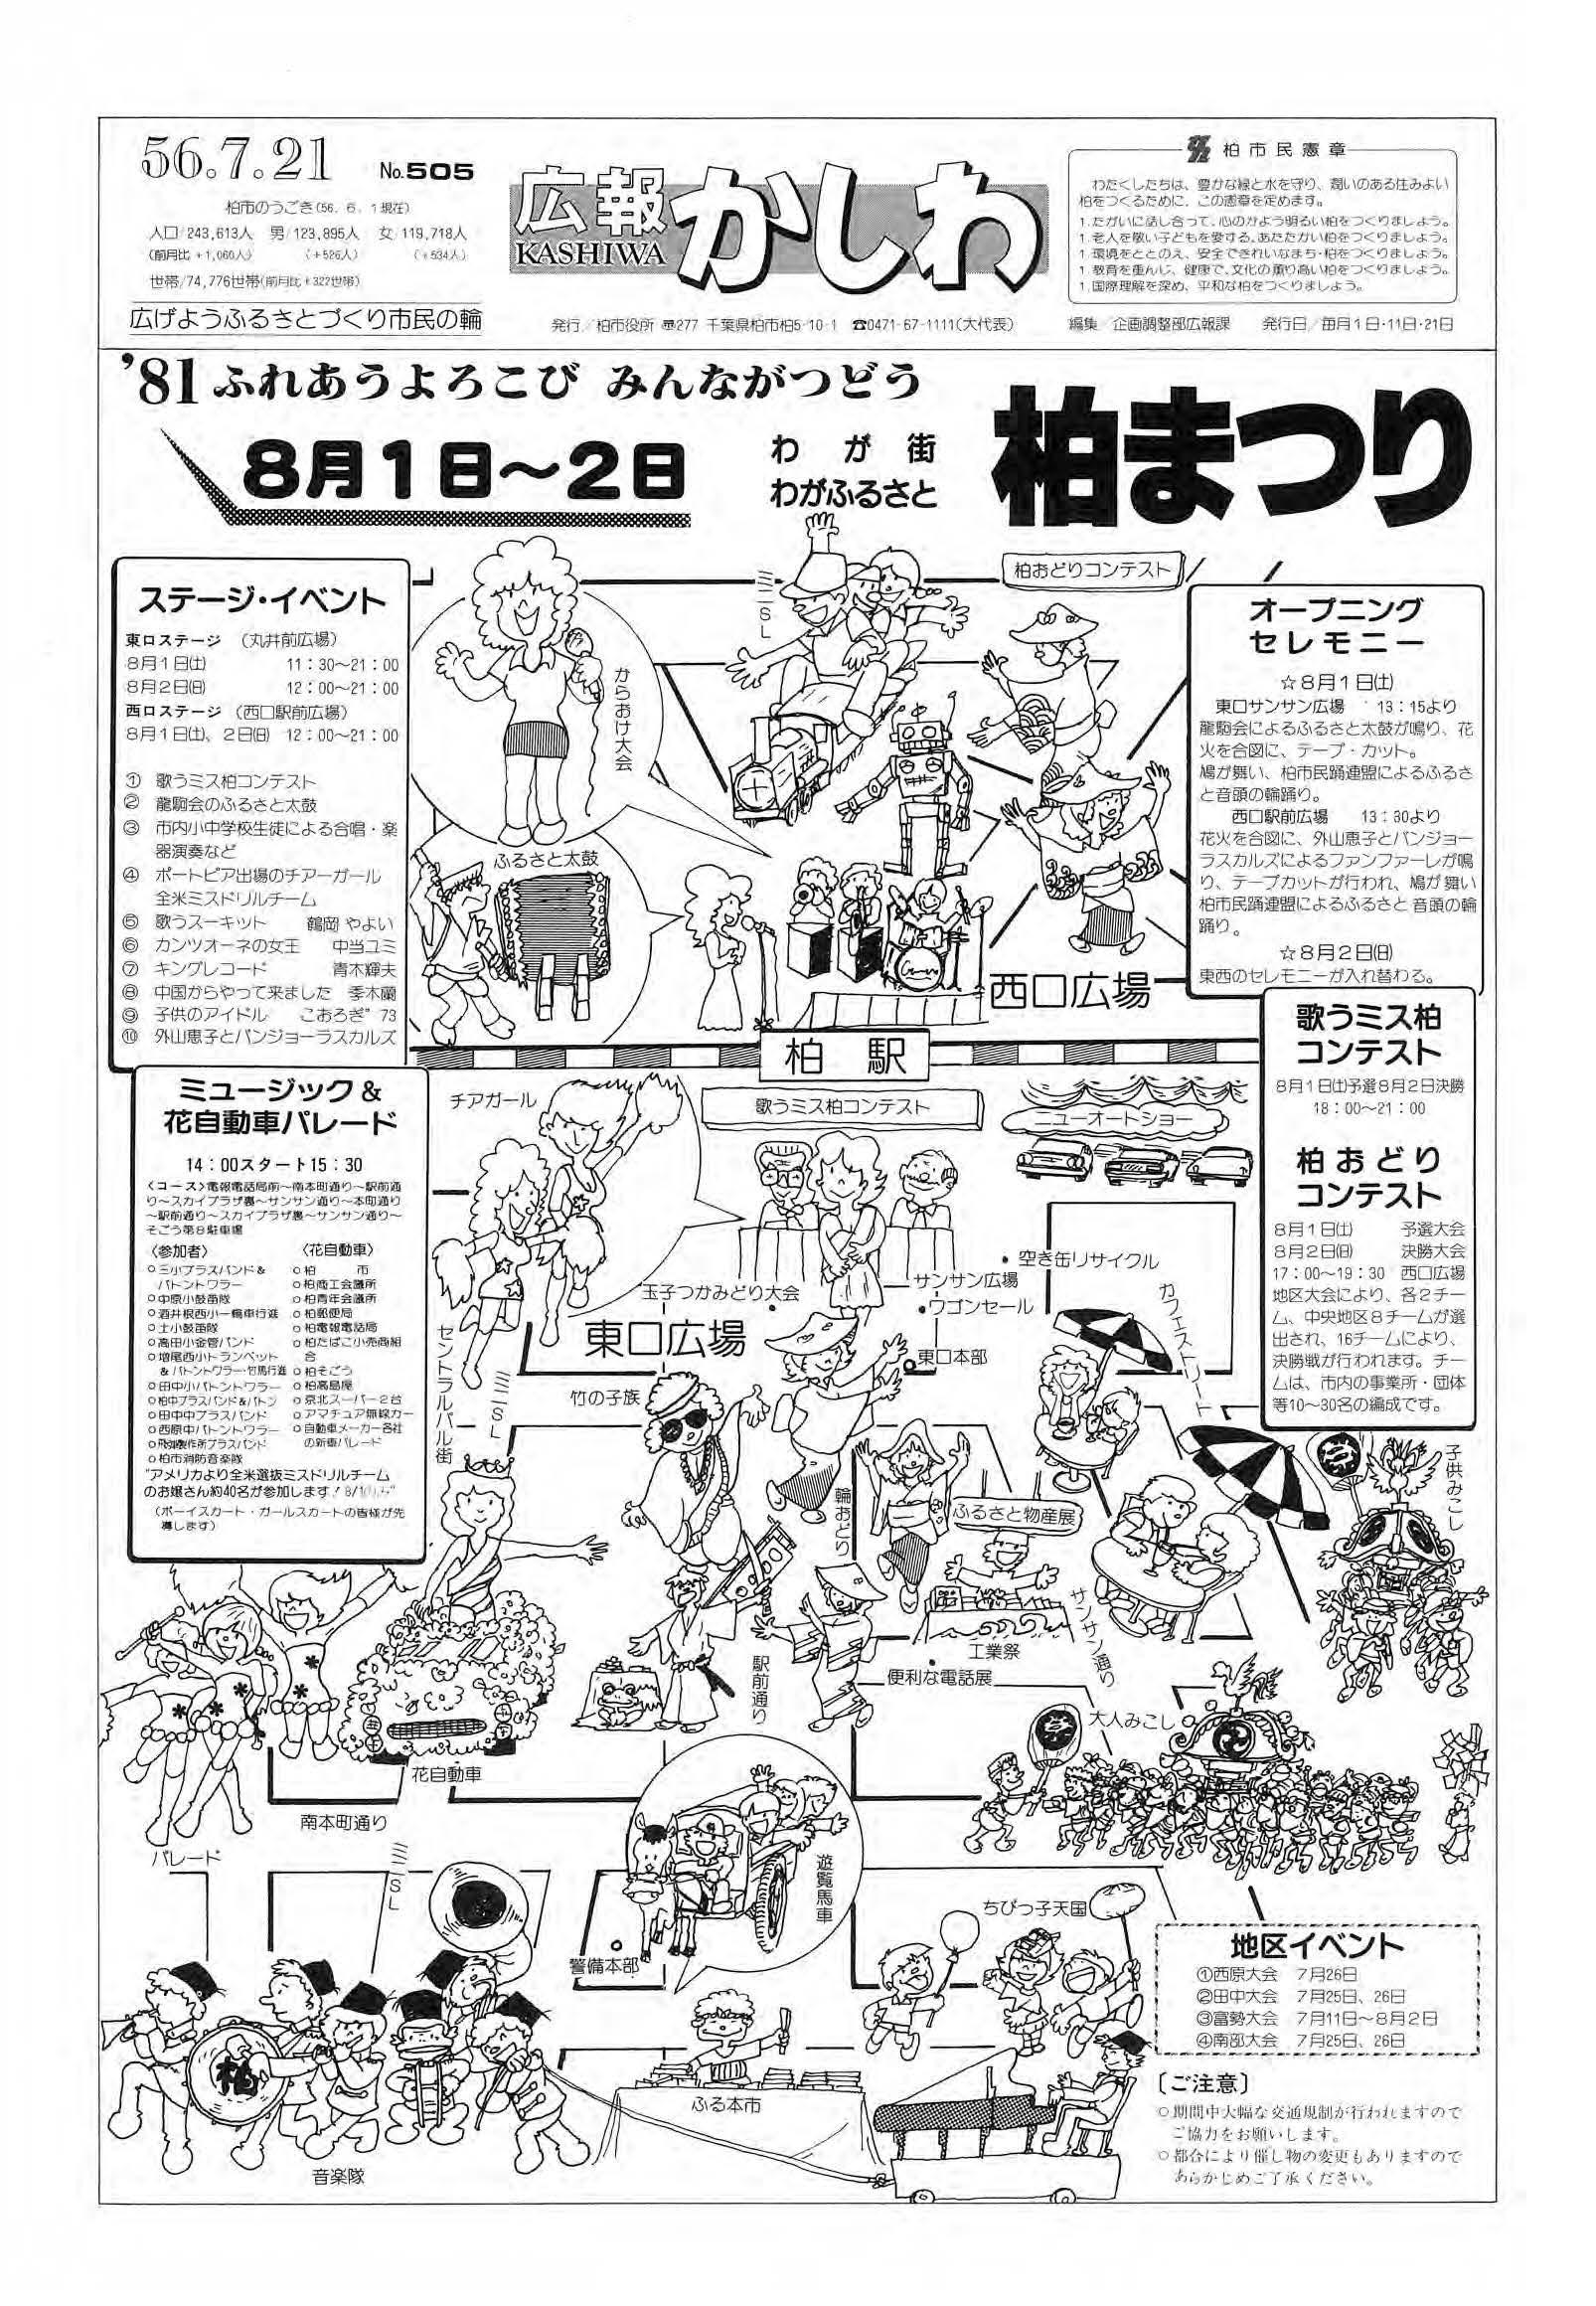 広報かしわ　昭和56年7月21日発行　505号